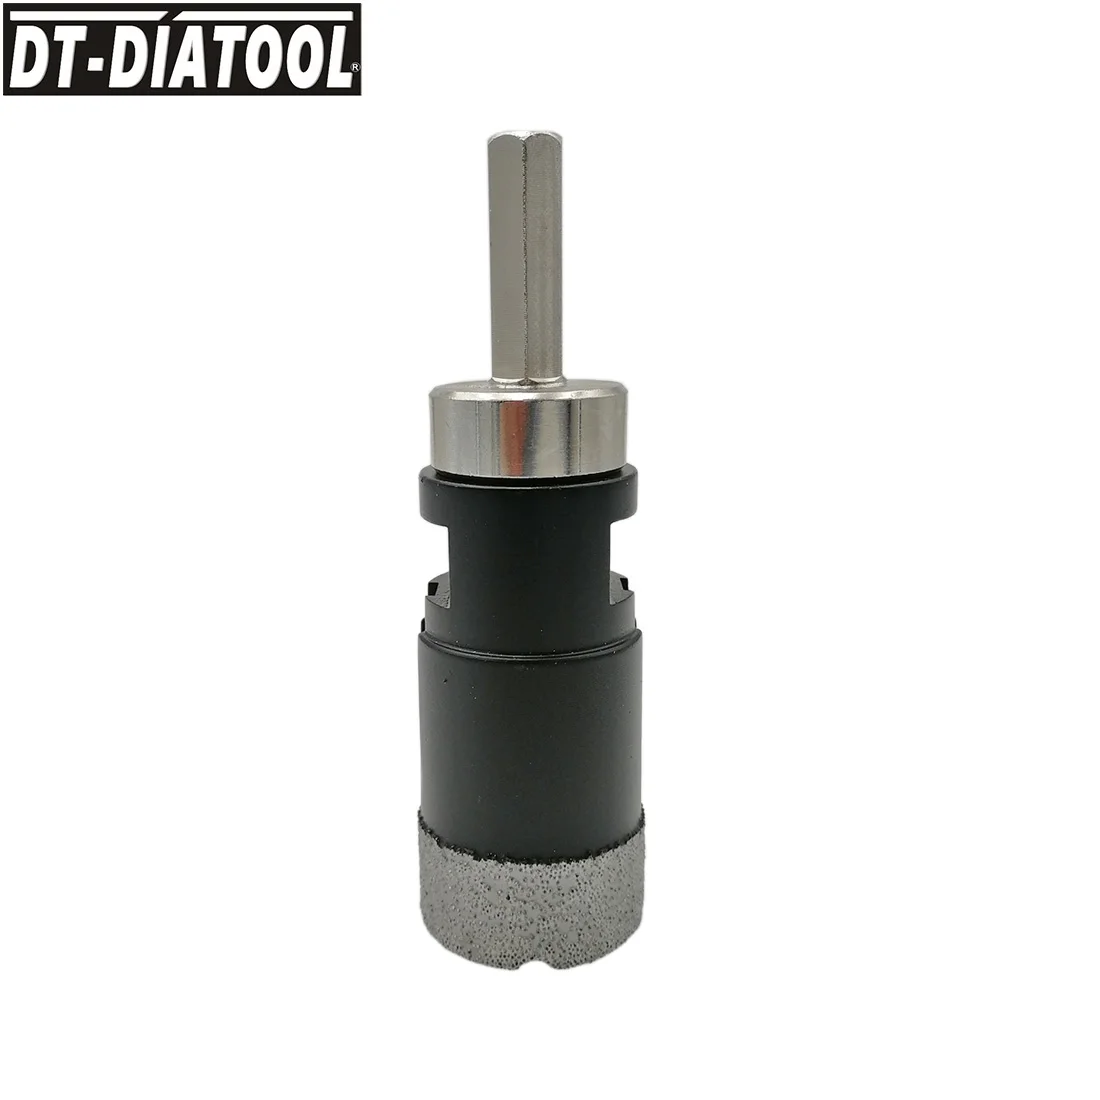 DT-DIATOOL конвертер резьбы для M14 с наружной резьбой на 3/8 шестигранный хвостовик алмазные коронки для ручной дрели или электрической дрели